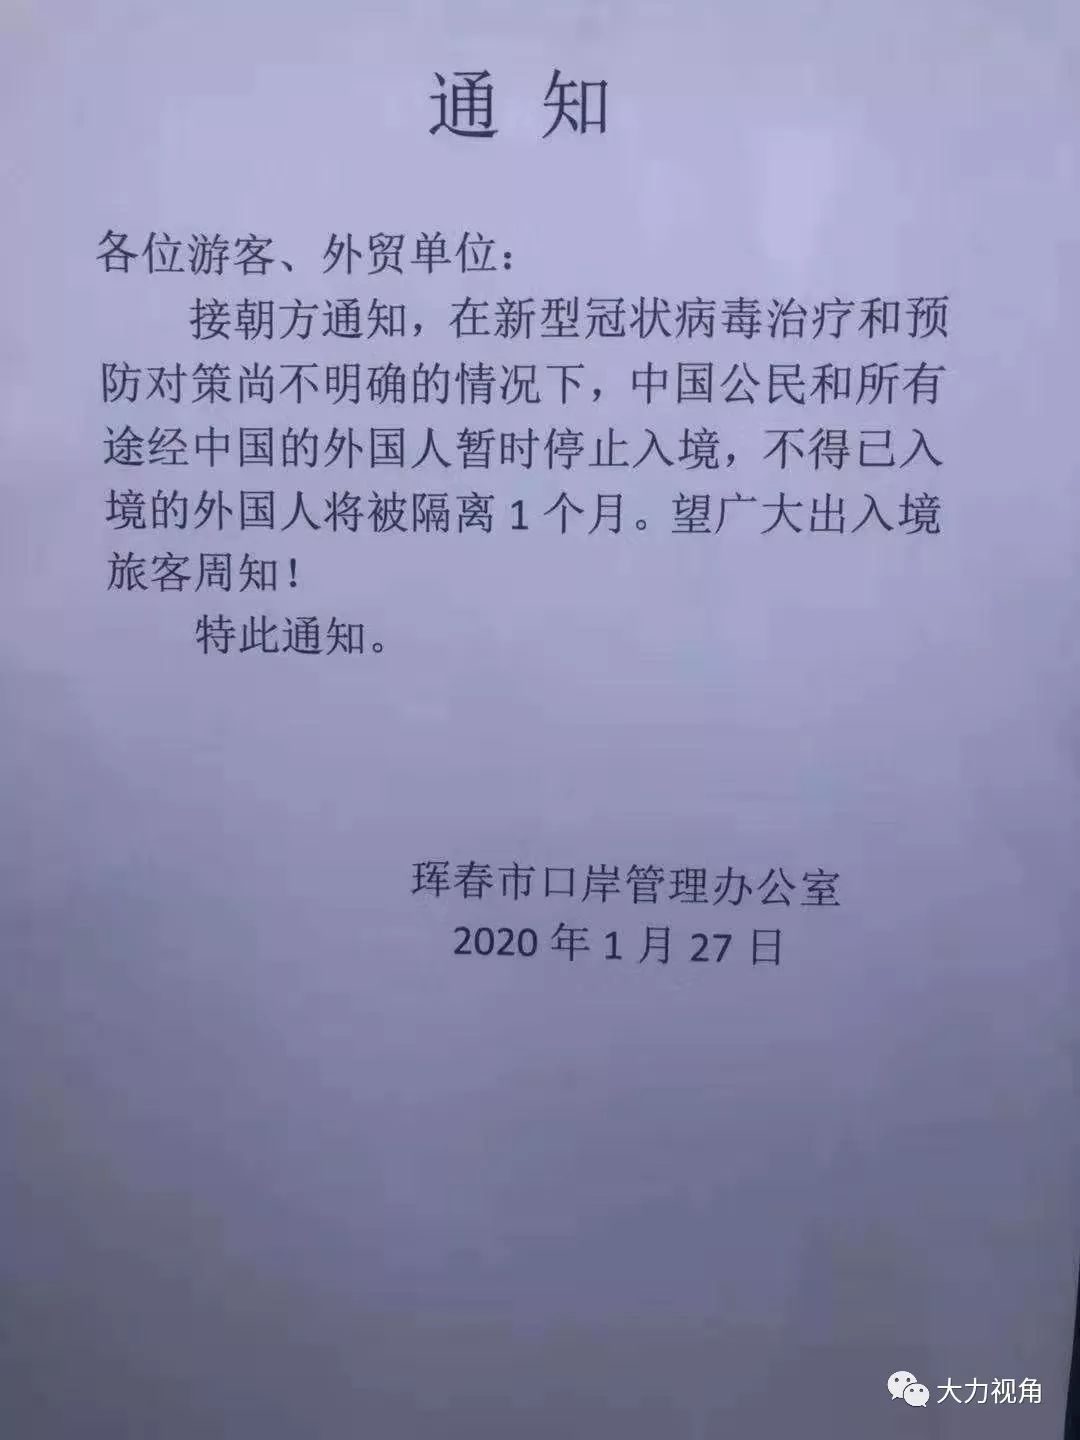 编辑大年初三(1月27日)圈河口岸贴出了通知,中国公民和所有途径中国的